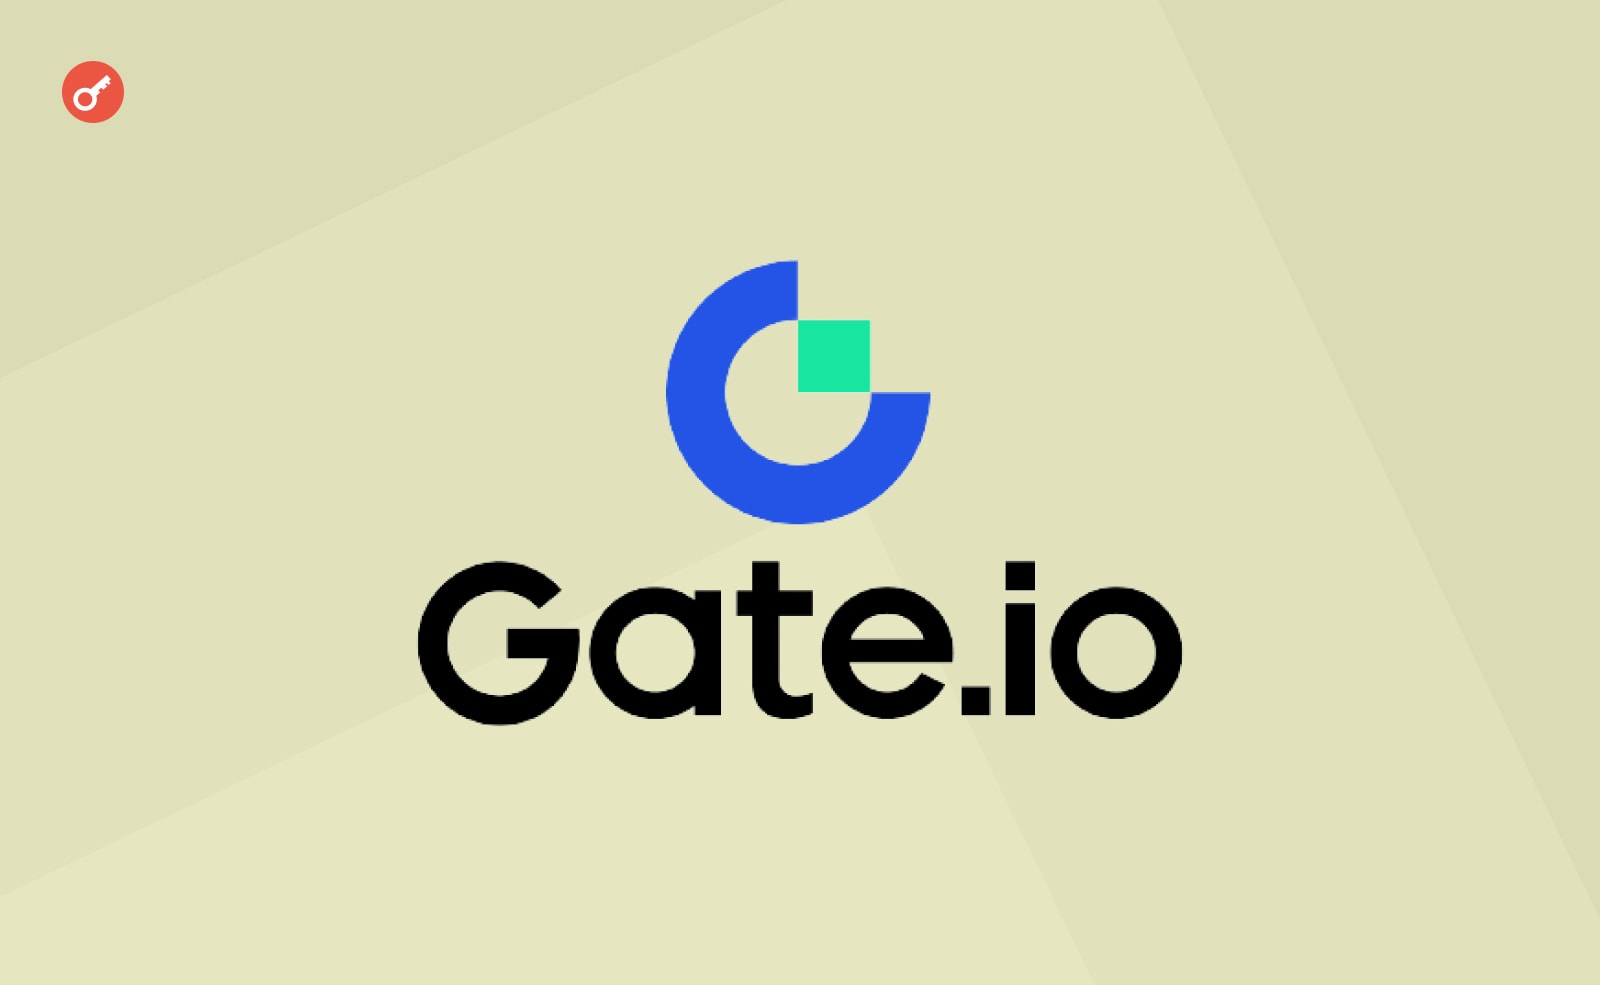 Gate.io выпустили новую криптокарту Visa для Еврозоны. Заглавный коллаж новости.